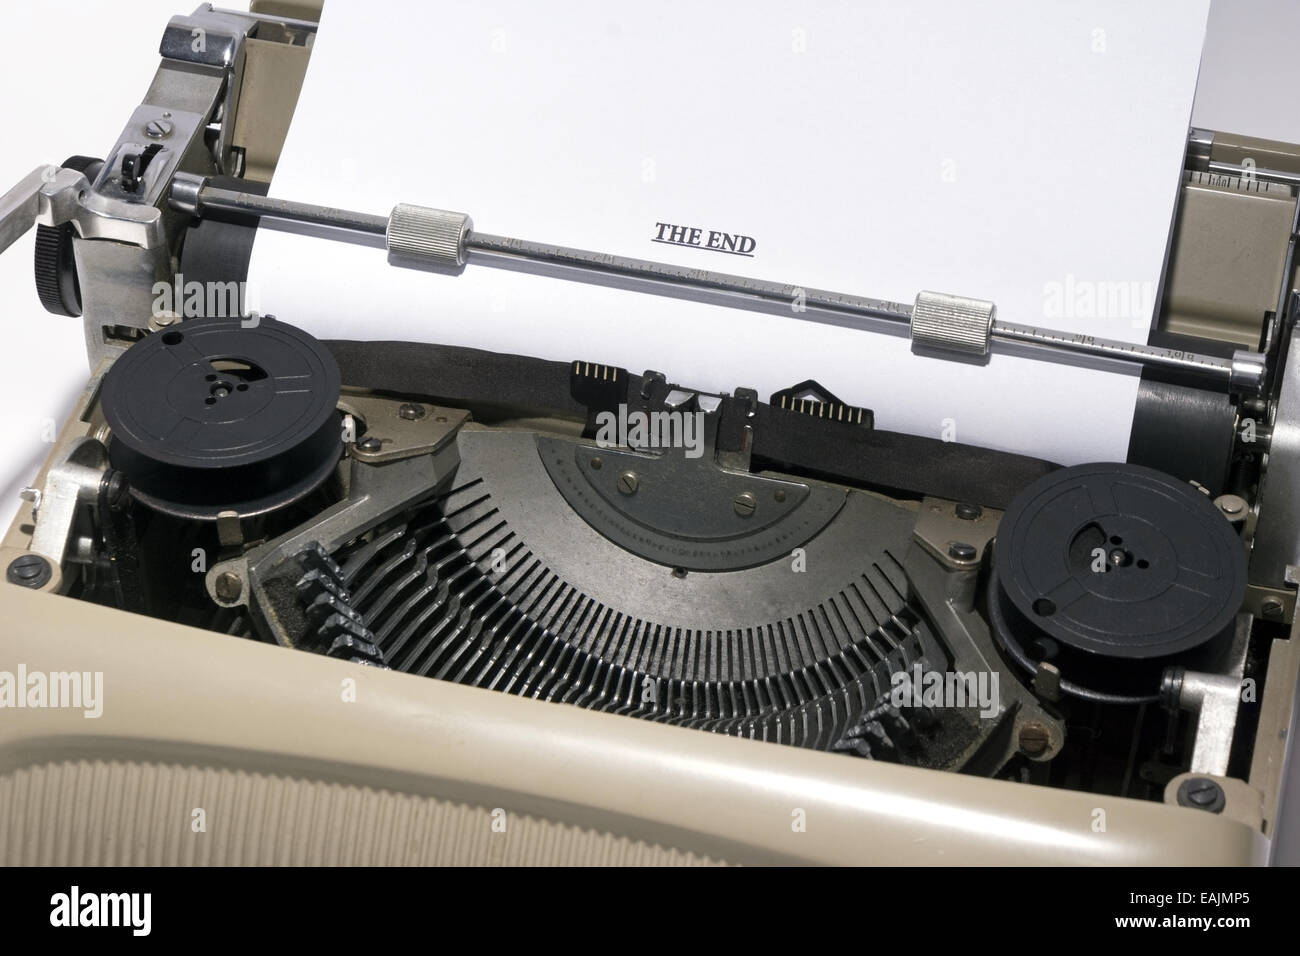 Machine à écrire Olivetti Studio 44 Banque D'Images